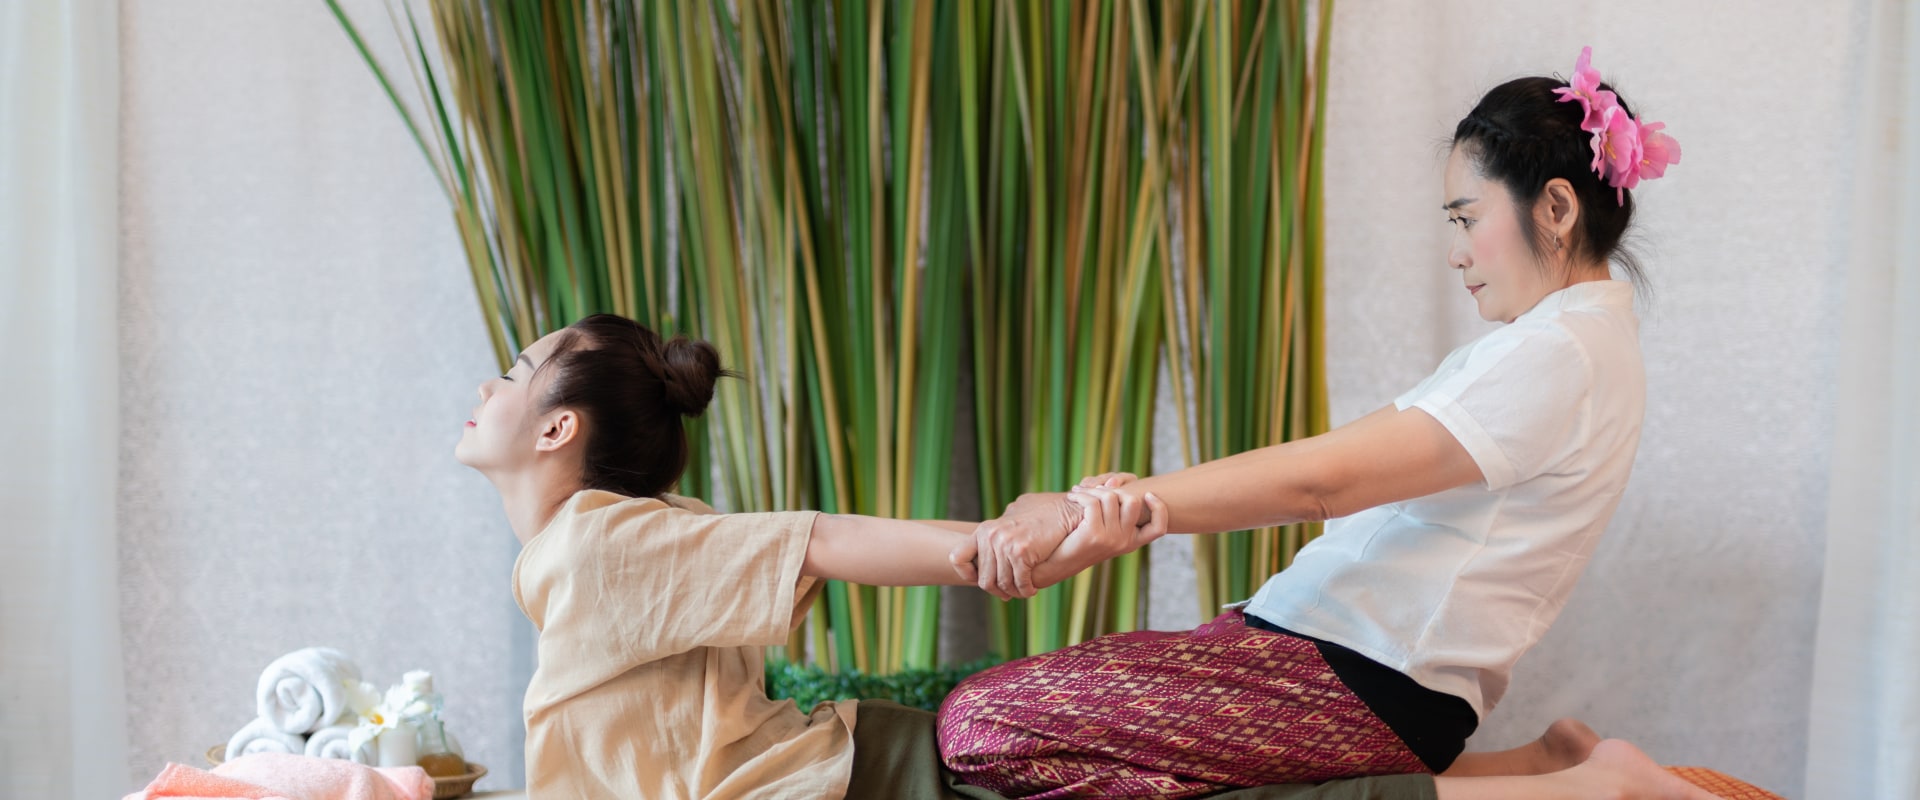 Was ist eine thailändische massage?